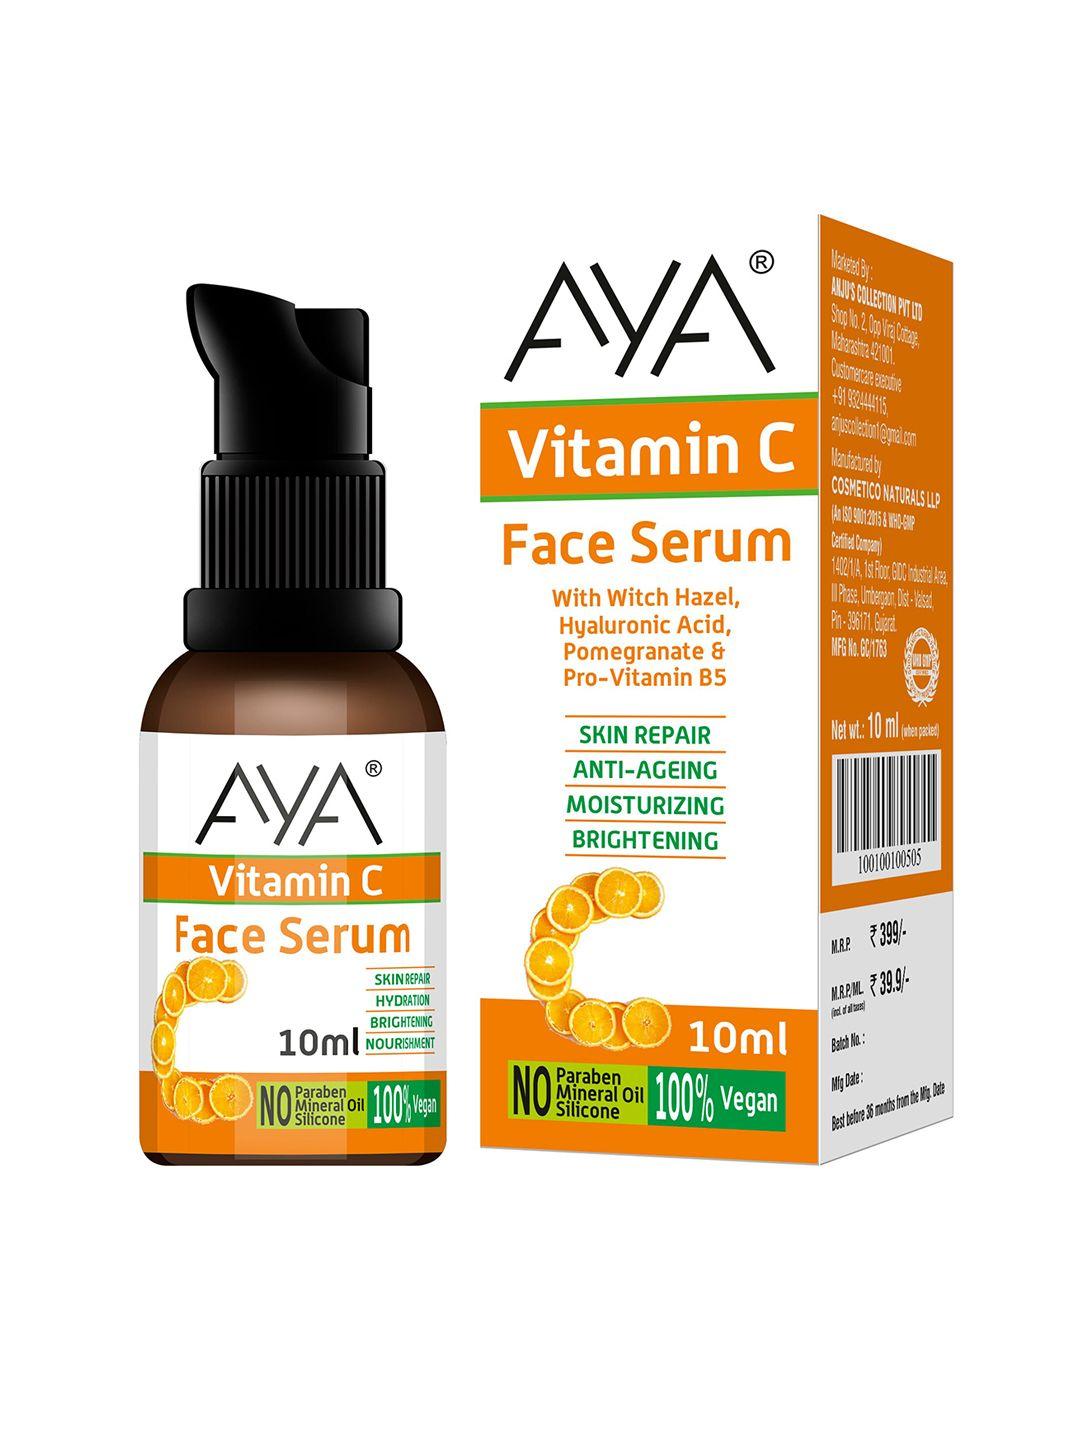 aya vitamin c face serum moisturizing and brightening 10ml